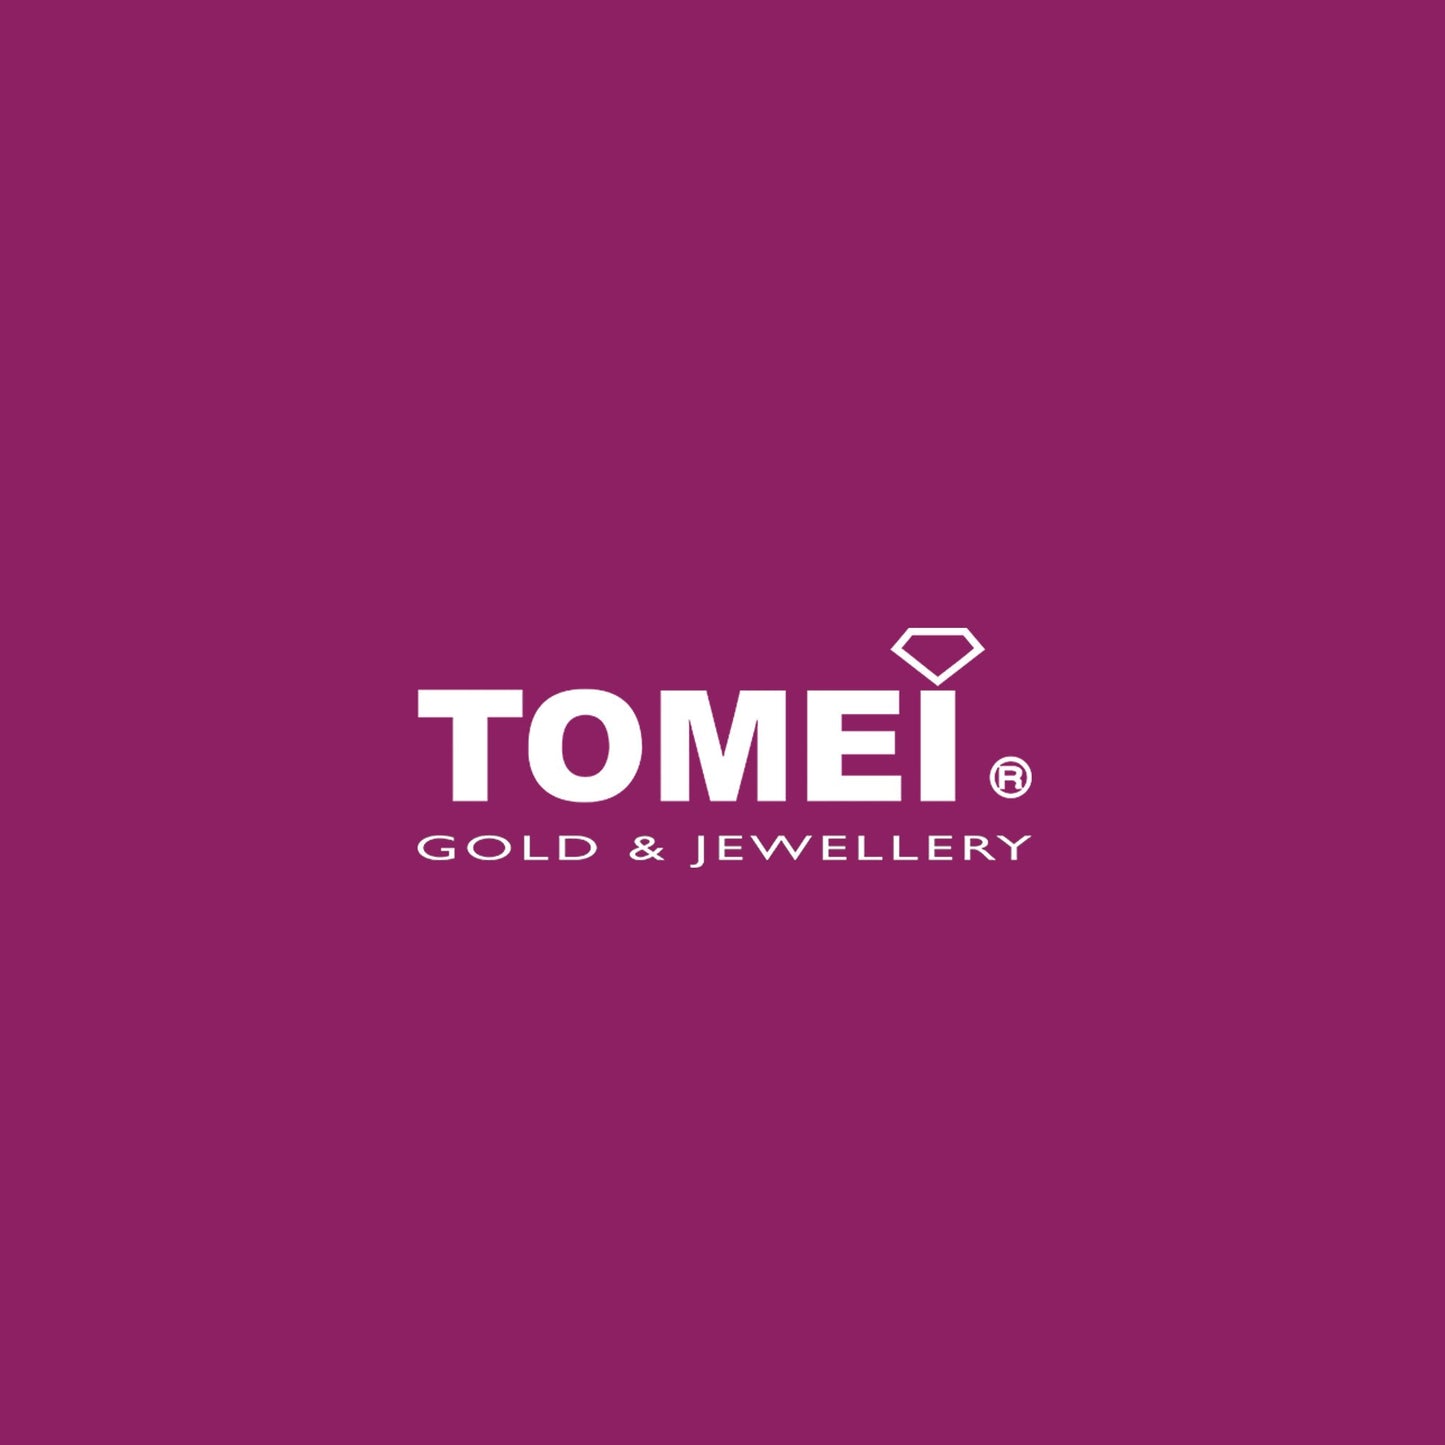 TOMEI Sweet Heart Earrings, Yellow Gold 916